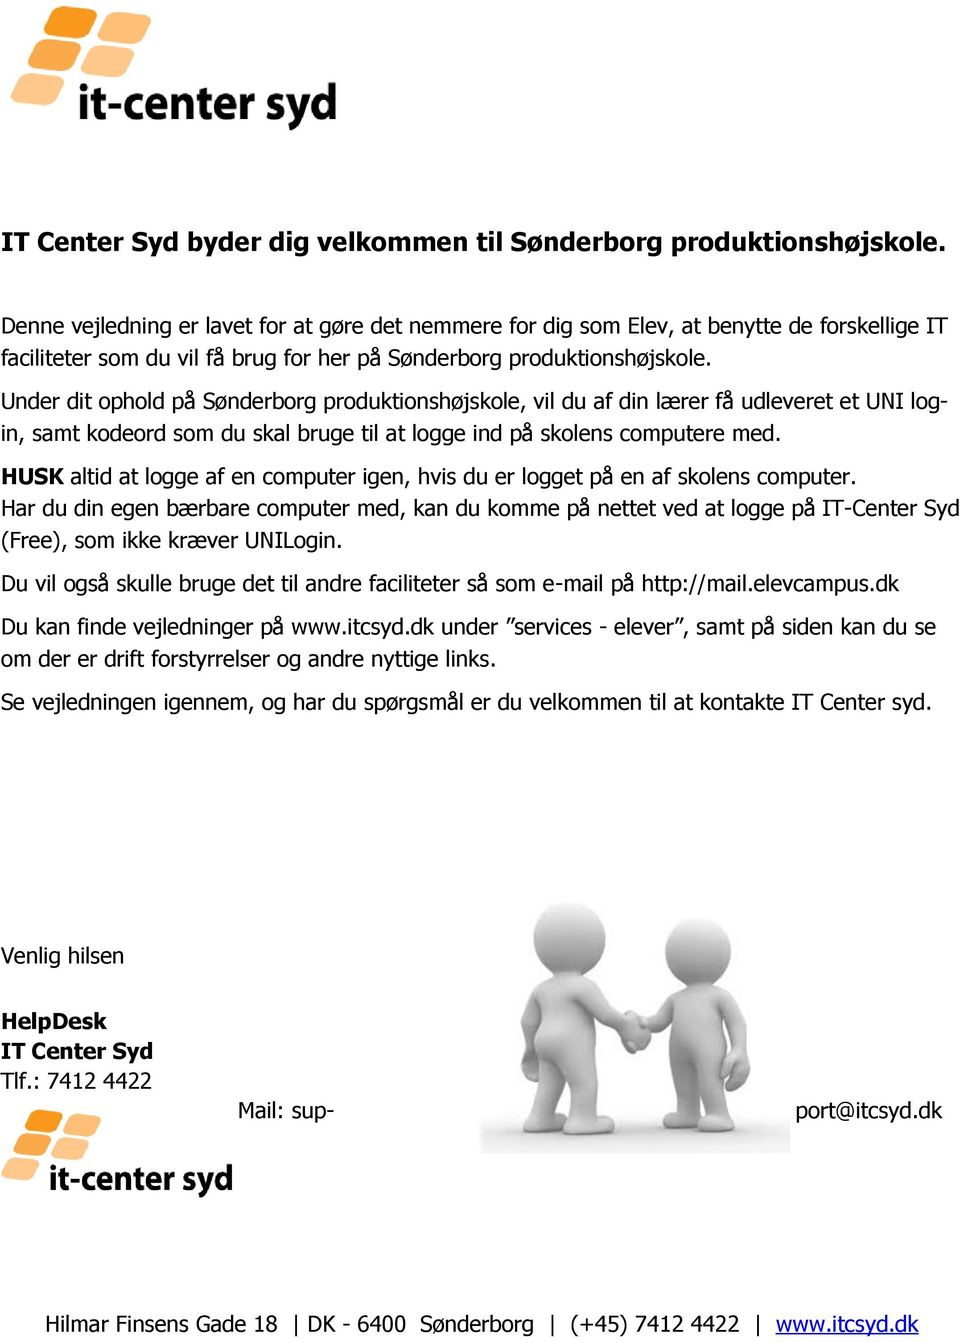 Under dit ophold på Sønderborg produktionshøjskole, vil du af din lærer få udleveret et UNI login, samt kodeord som du skal bruge til at logge ind på skolens computere med.